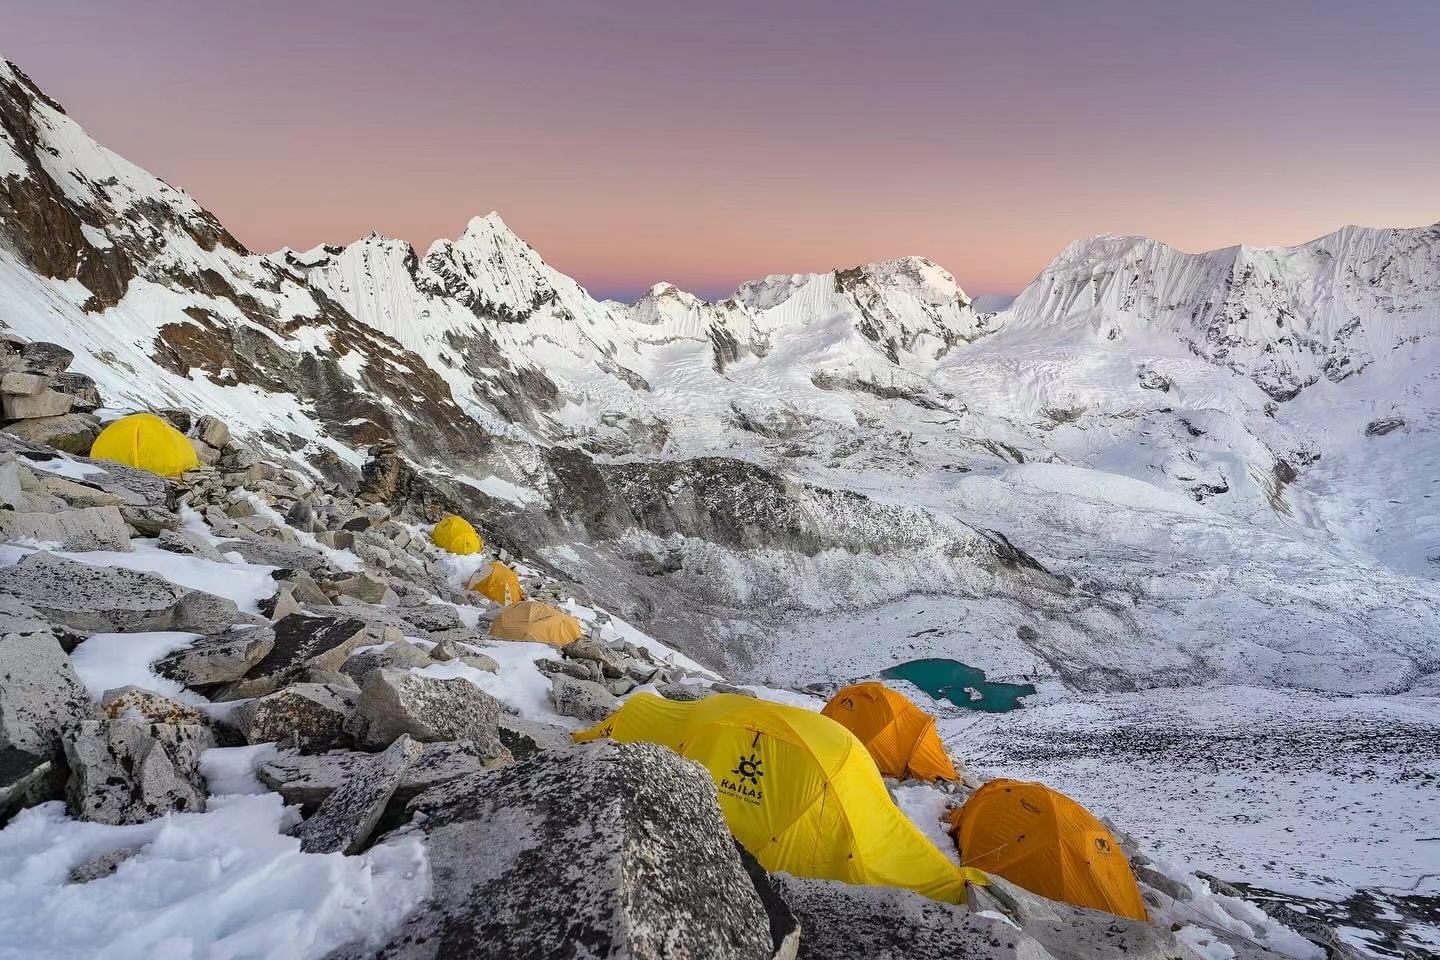 在尼泊尔进行登山探险的最佳季节通常是春季和秋季： 春季（三月至五月）：这是尼泊尔登山探险的最热门时间